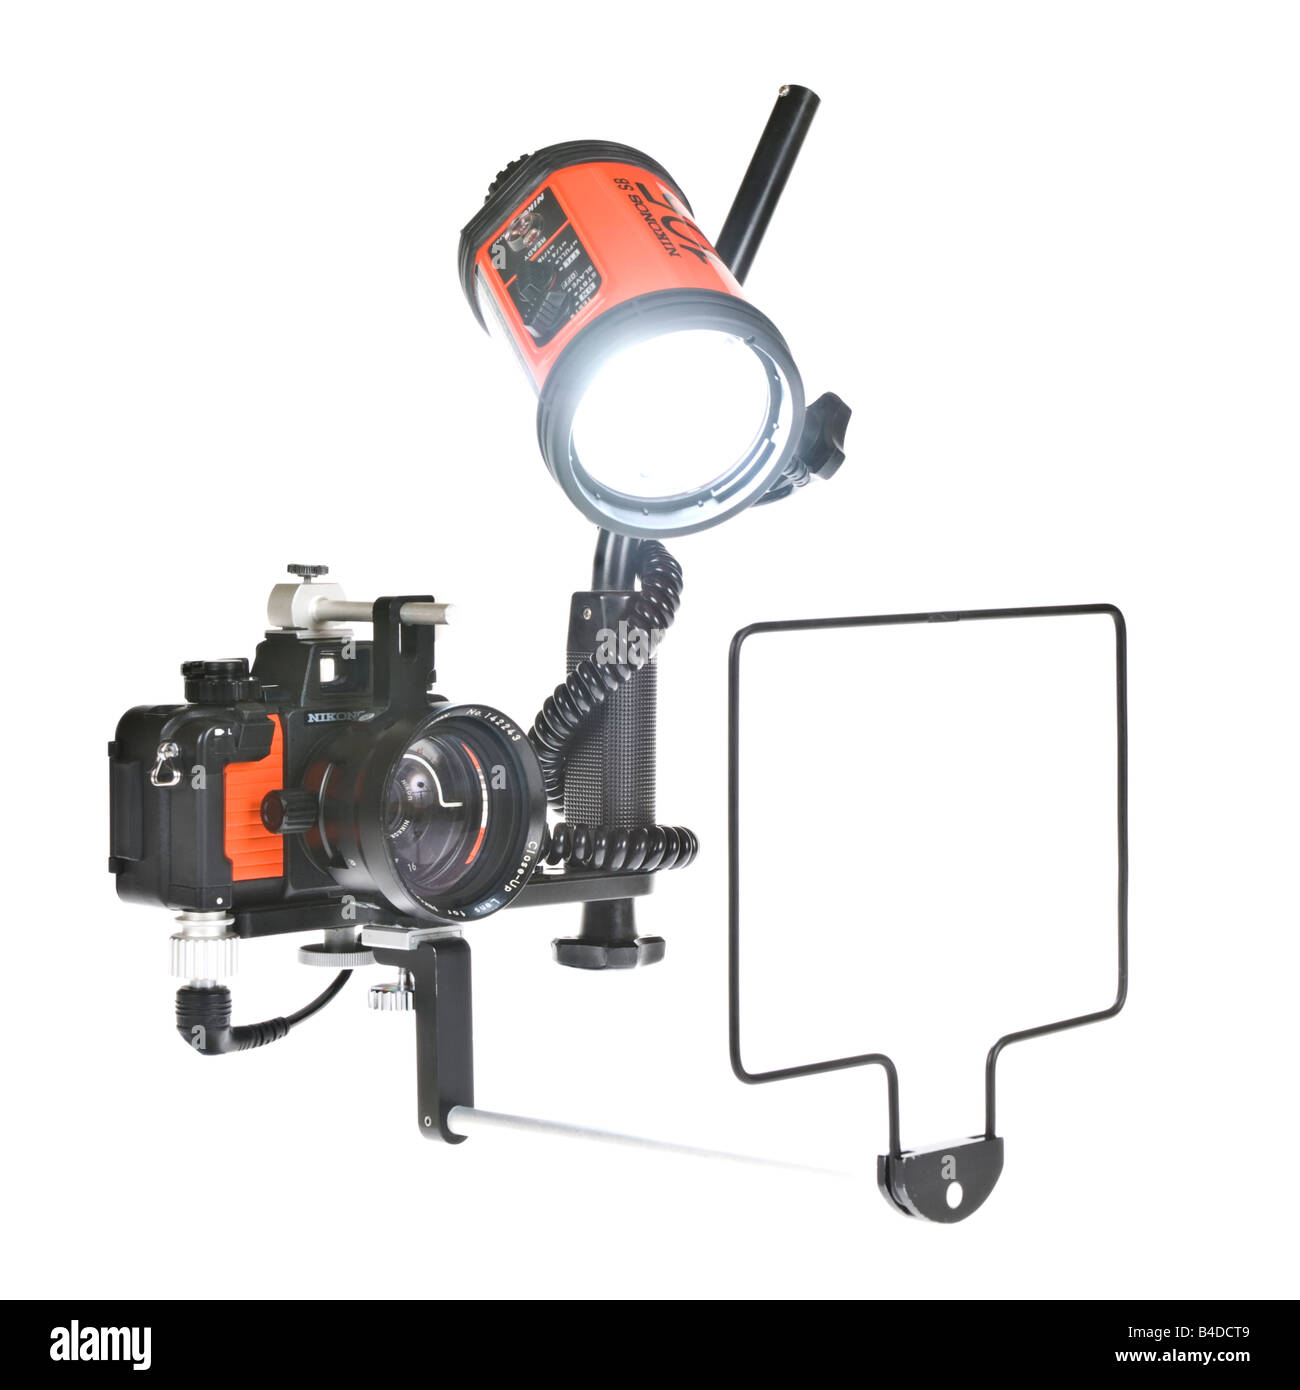 Ein Nikonos V Unterwasser-Kamera einrichten mit 35mm-Objektiv, Nahaufnahme Kit + SB105 Blitz auf reinem weiß (255) Hintergrund. Stockfoto